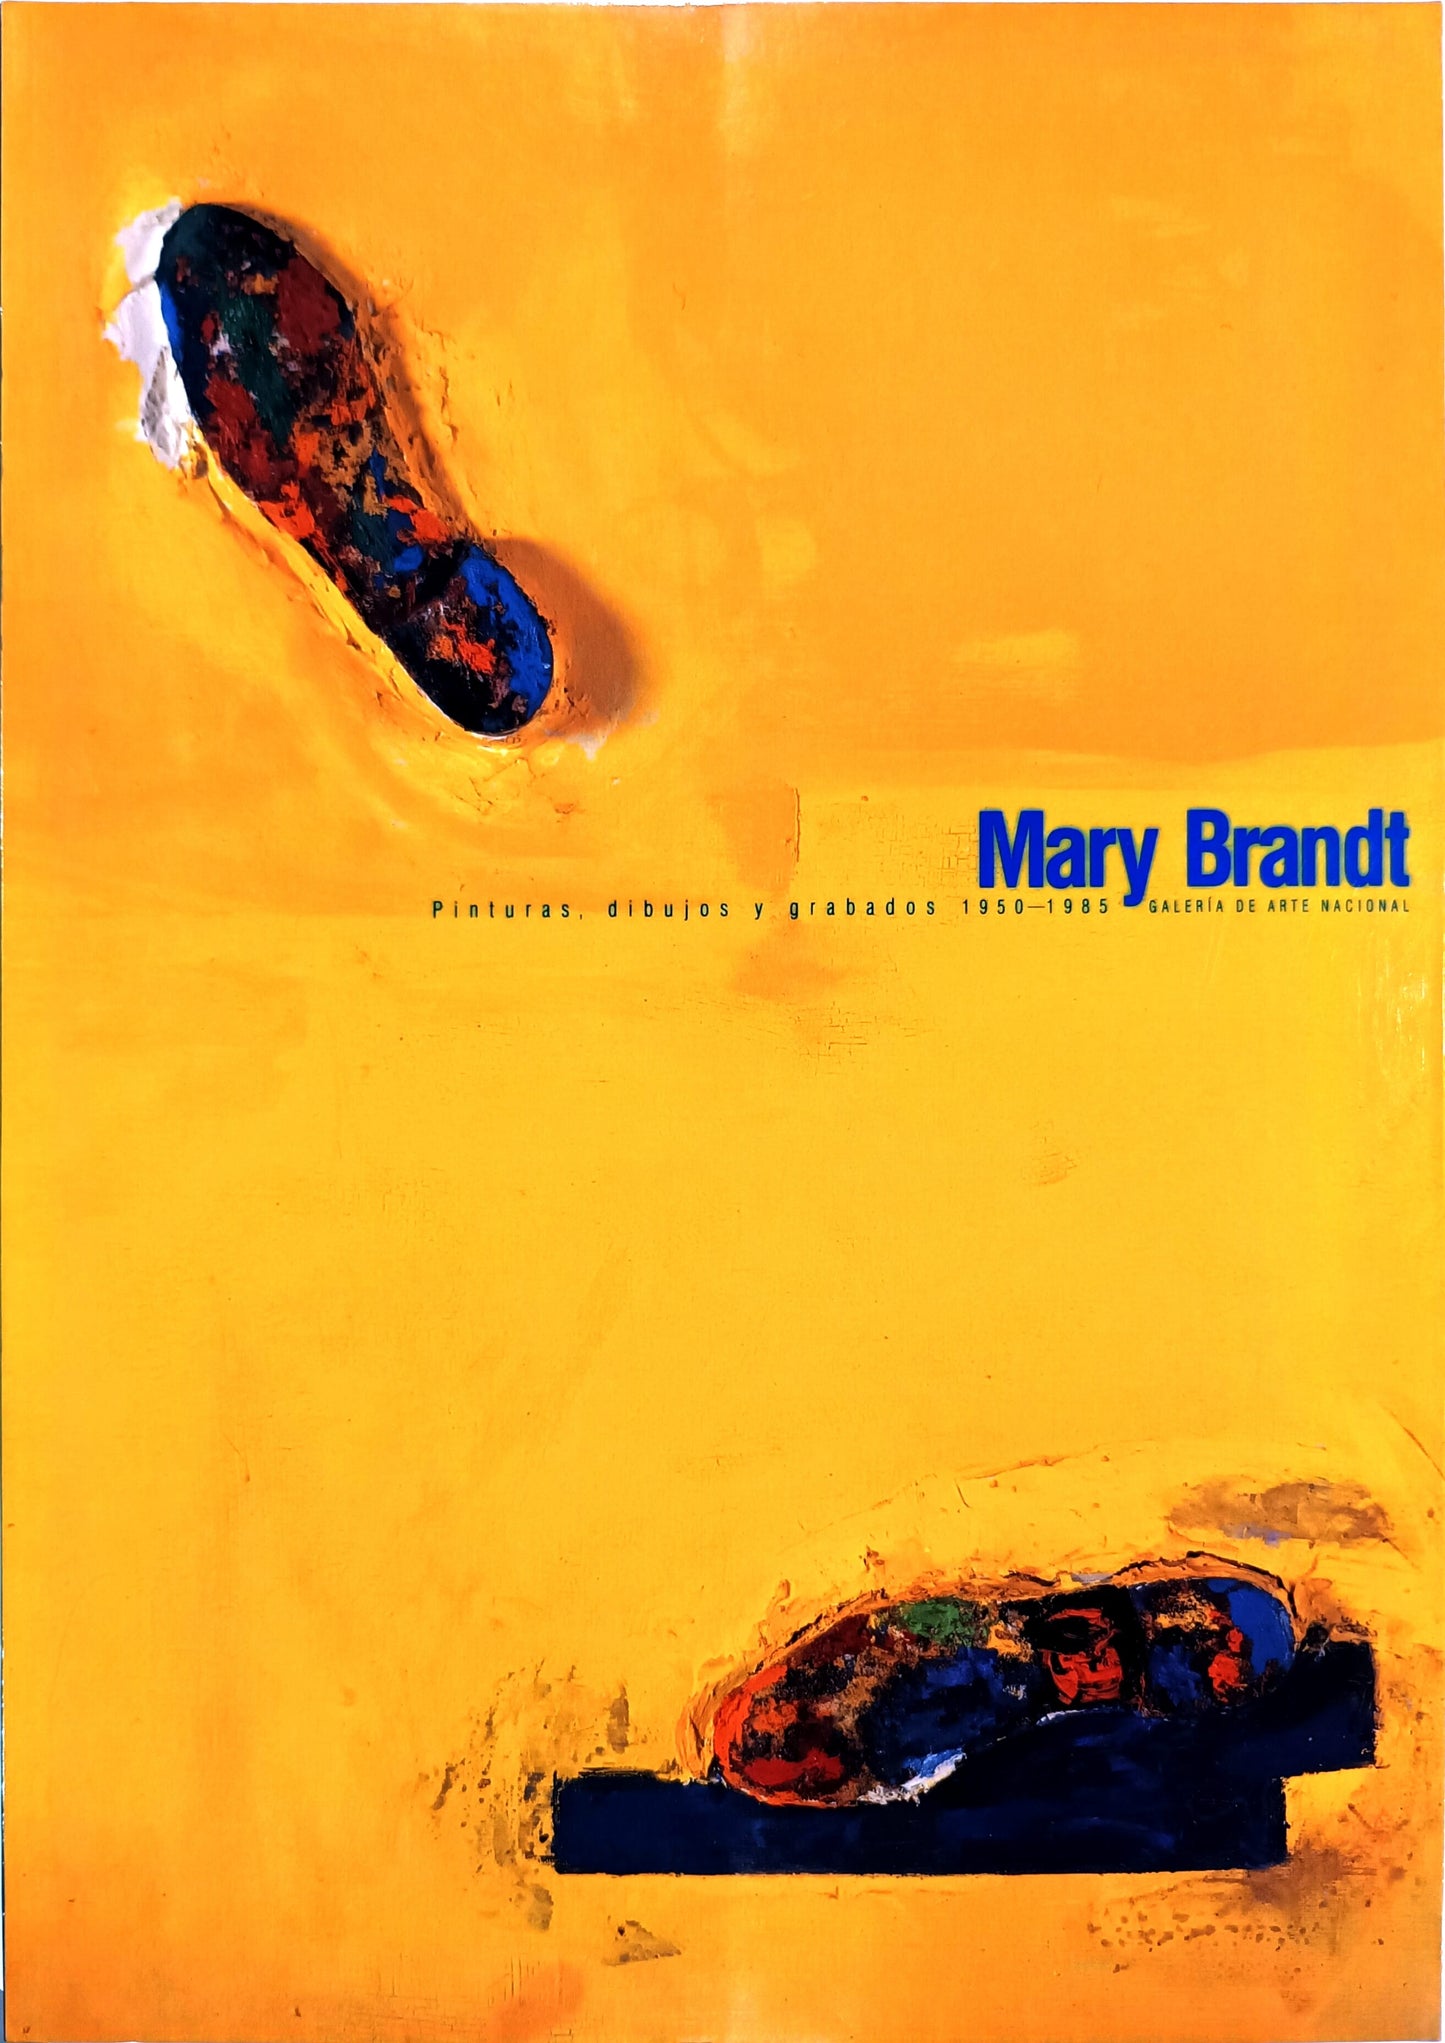 Mary Brandt. Pinturas, dibujos y grabados 1950-1985